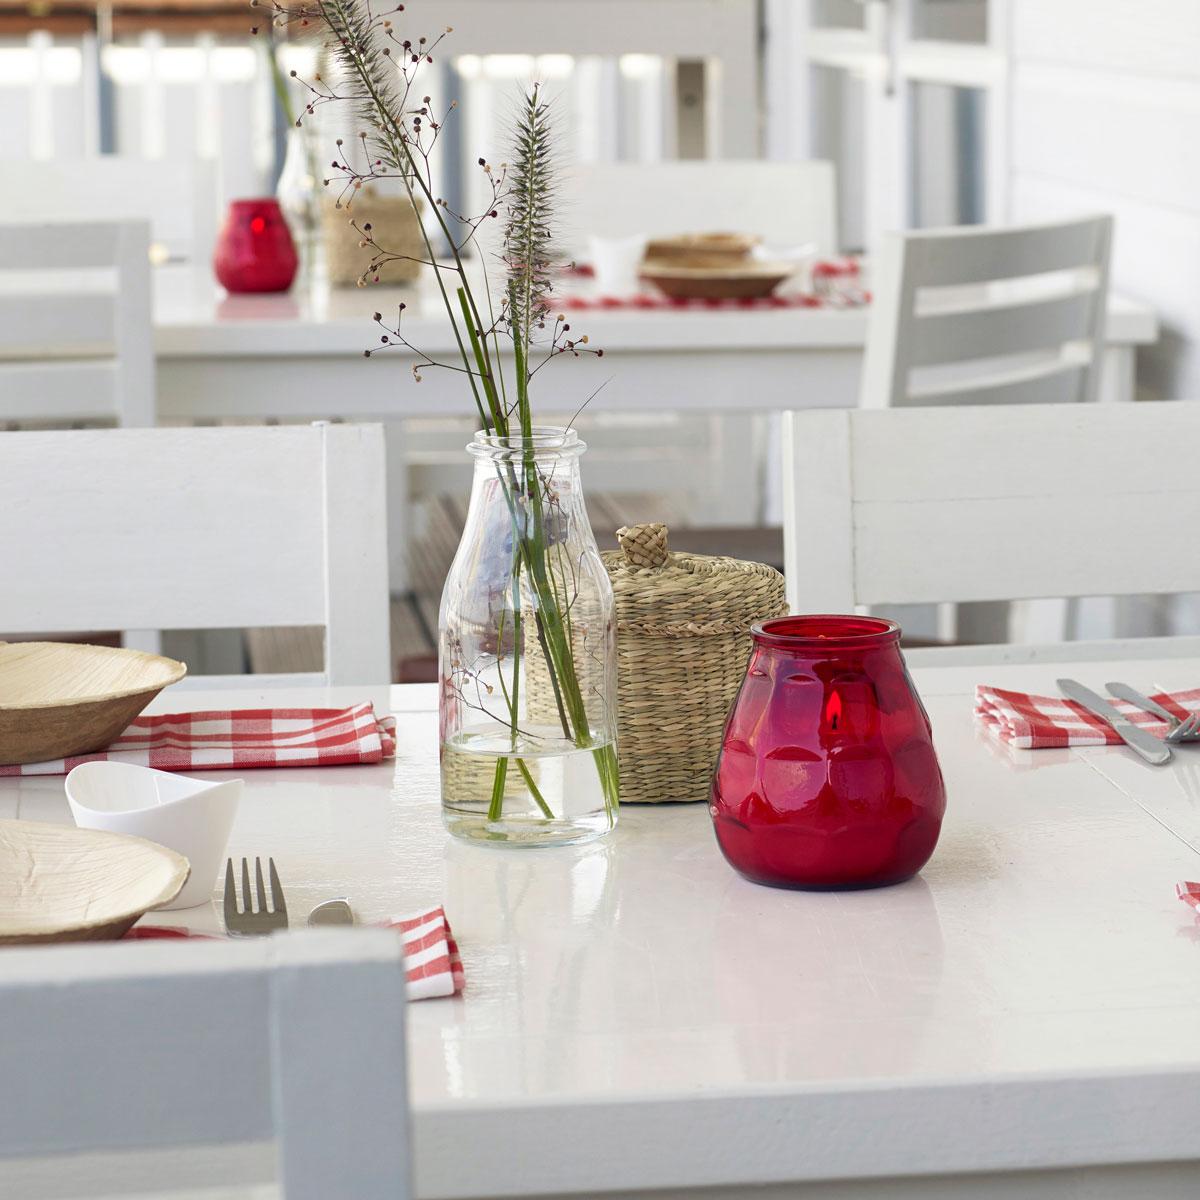 Kerzen Gastronomie im Außenbereich: Weiße Holzmöbel mit sommerlich dekorierten Tischen. Rot-weiß karierte Servietten als Unterlage für kleine Holzschüsseln, geflochtene Körbchen aus Seegras und Glasvasen mit sommerlichen Zweigen. In der Mitte jedes Tisches steht ein rotes, brennendes Glaswindlicht.